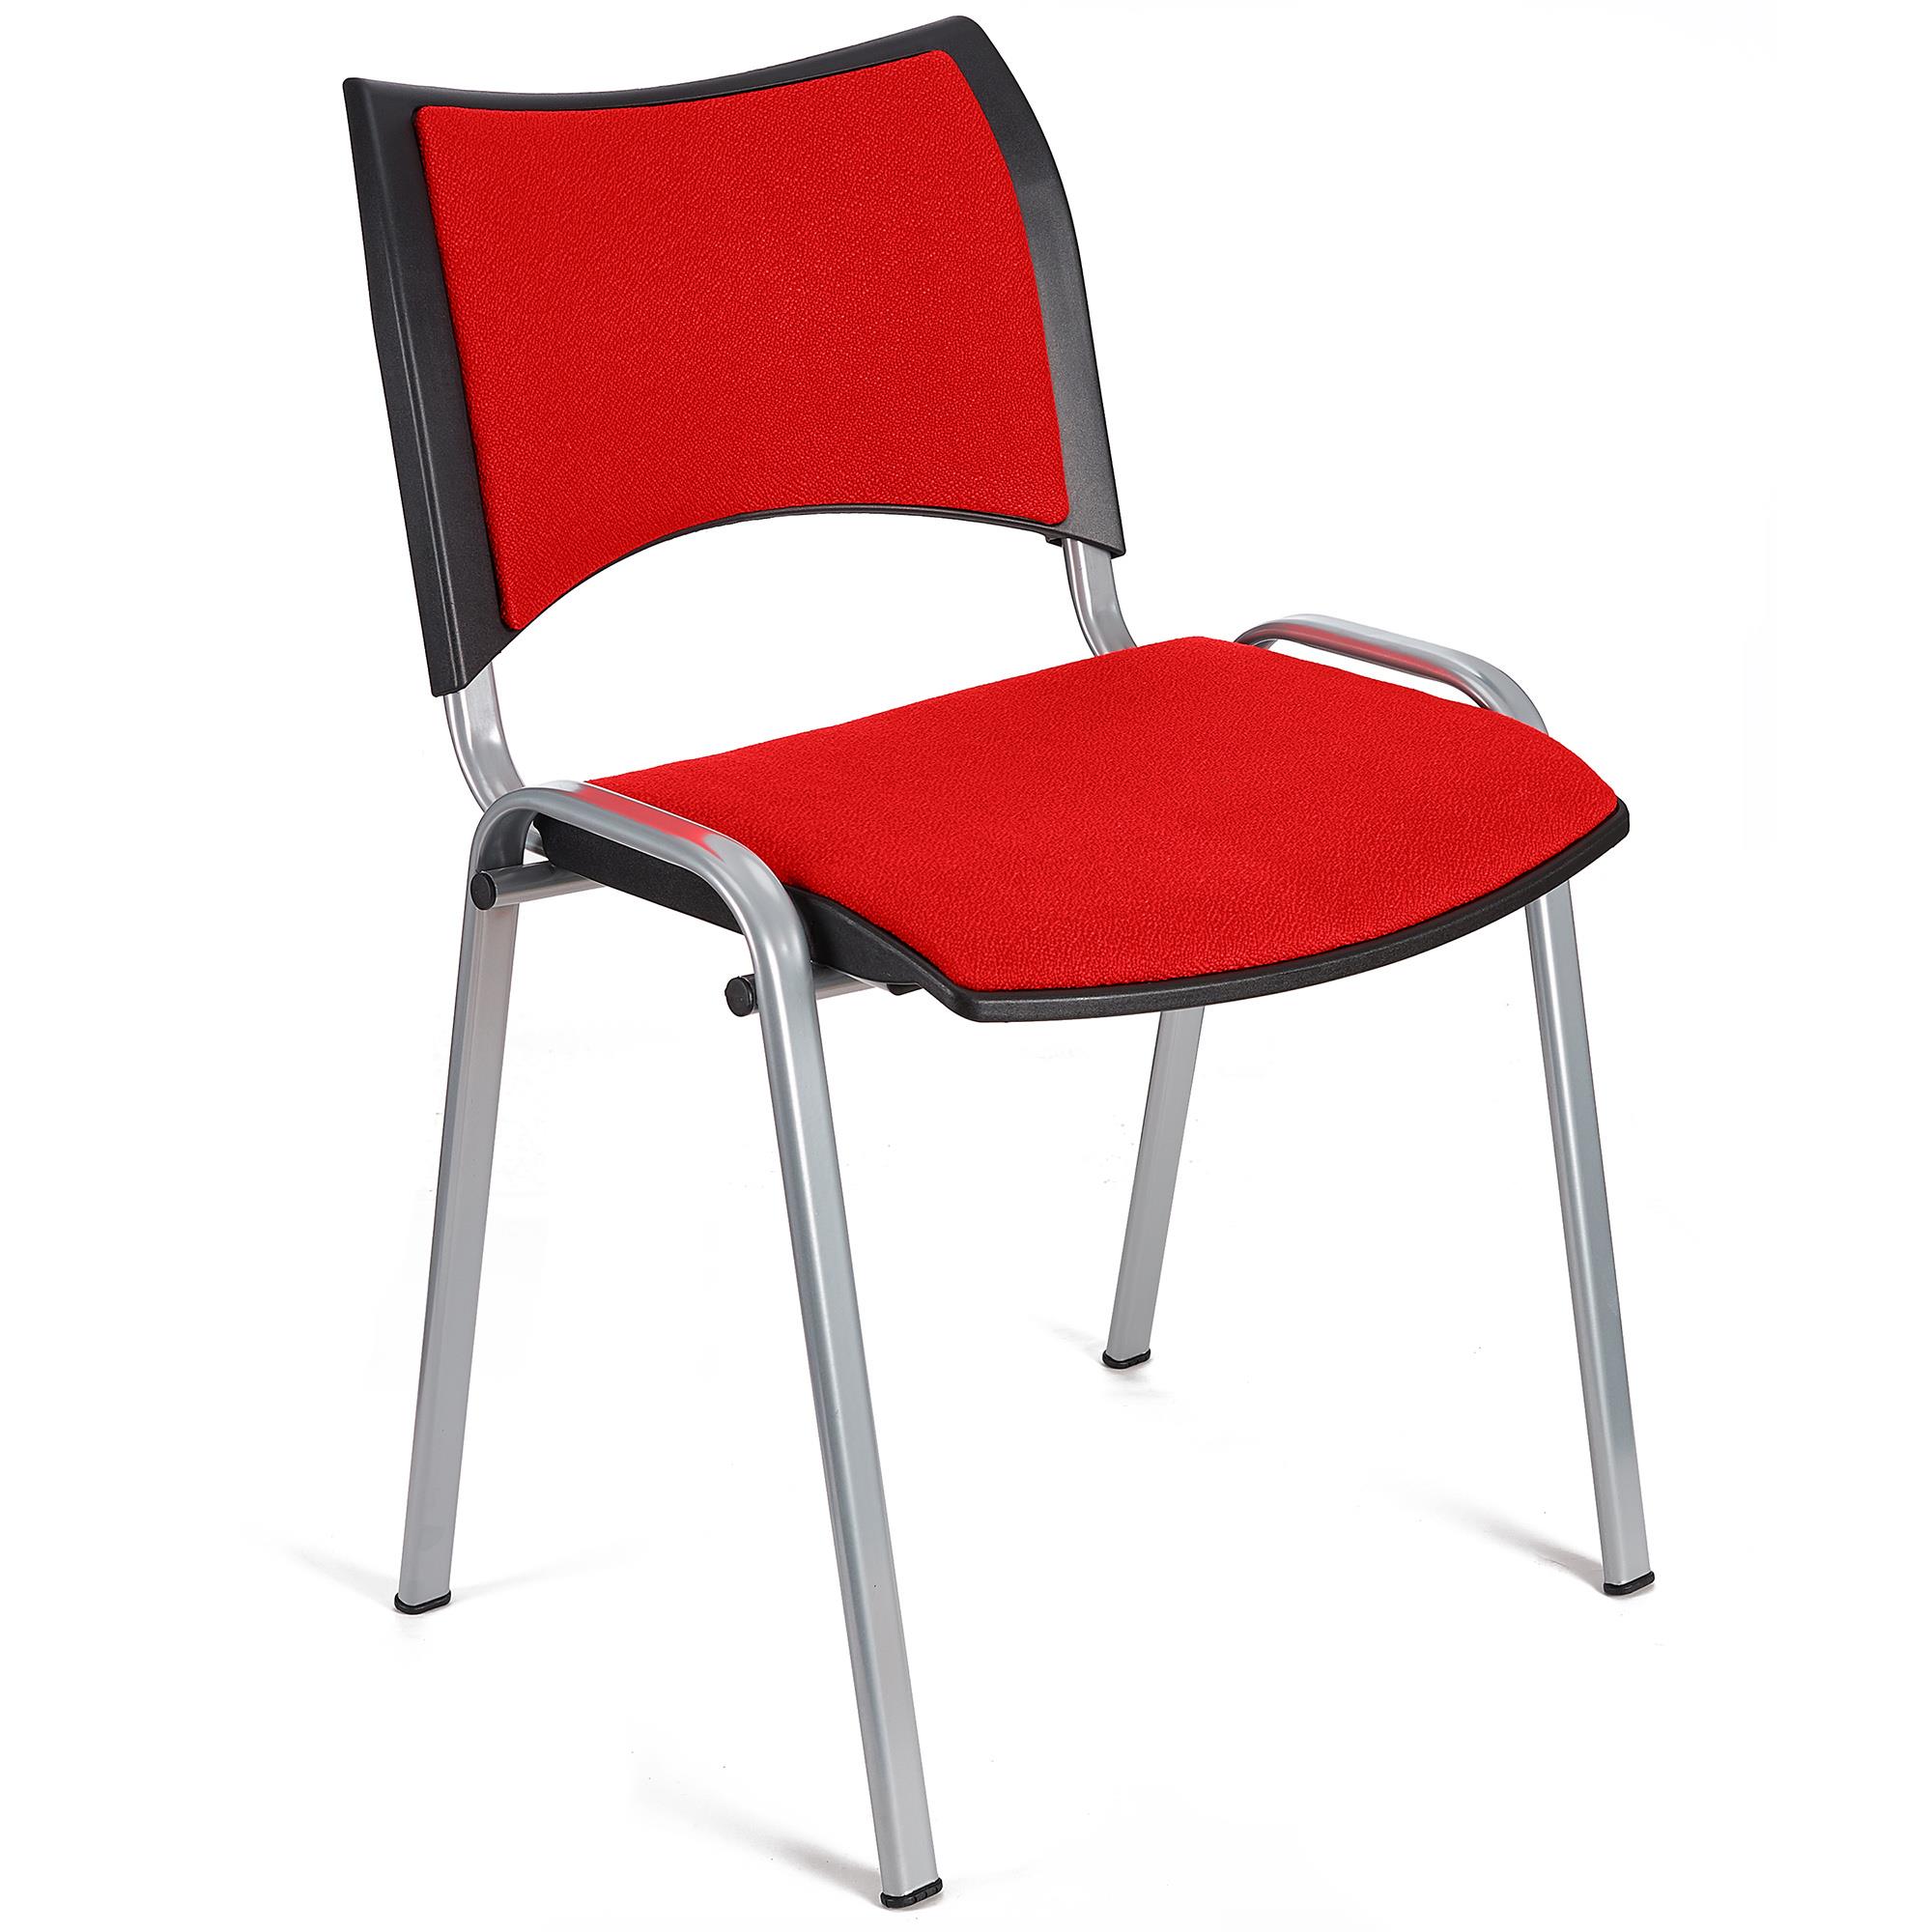 Cadeira de Visita ROMEL, Prática e Empilhável, Pernas Cinza, Em Pano, Vermelho